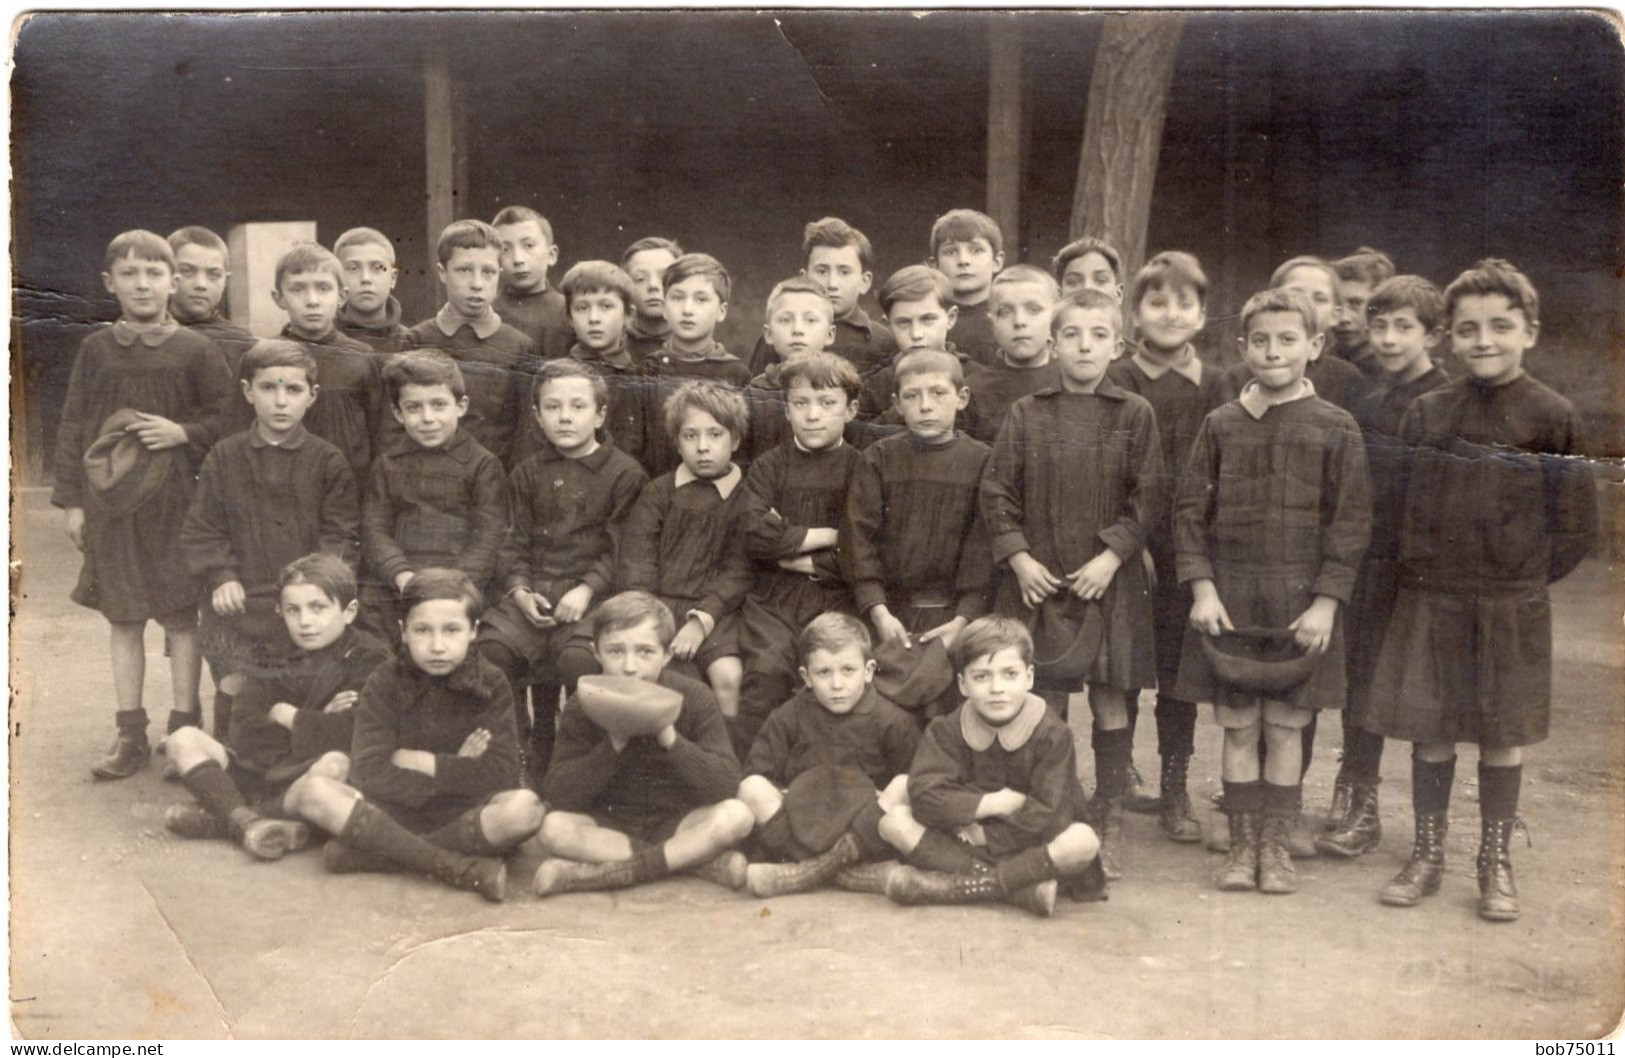 Carte Photo D'une Classe De Jeune Garcon Posant Dans La Cour De Leurs école Vers 1920 - Personnes Anonymes